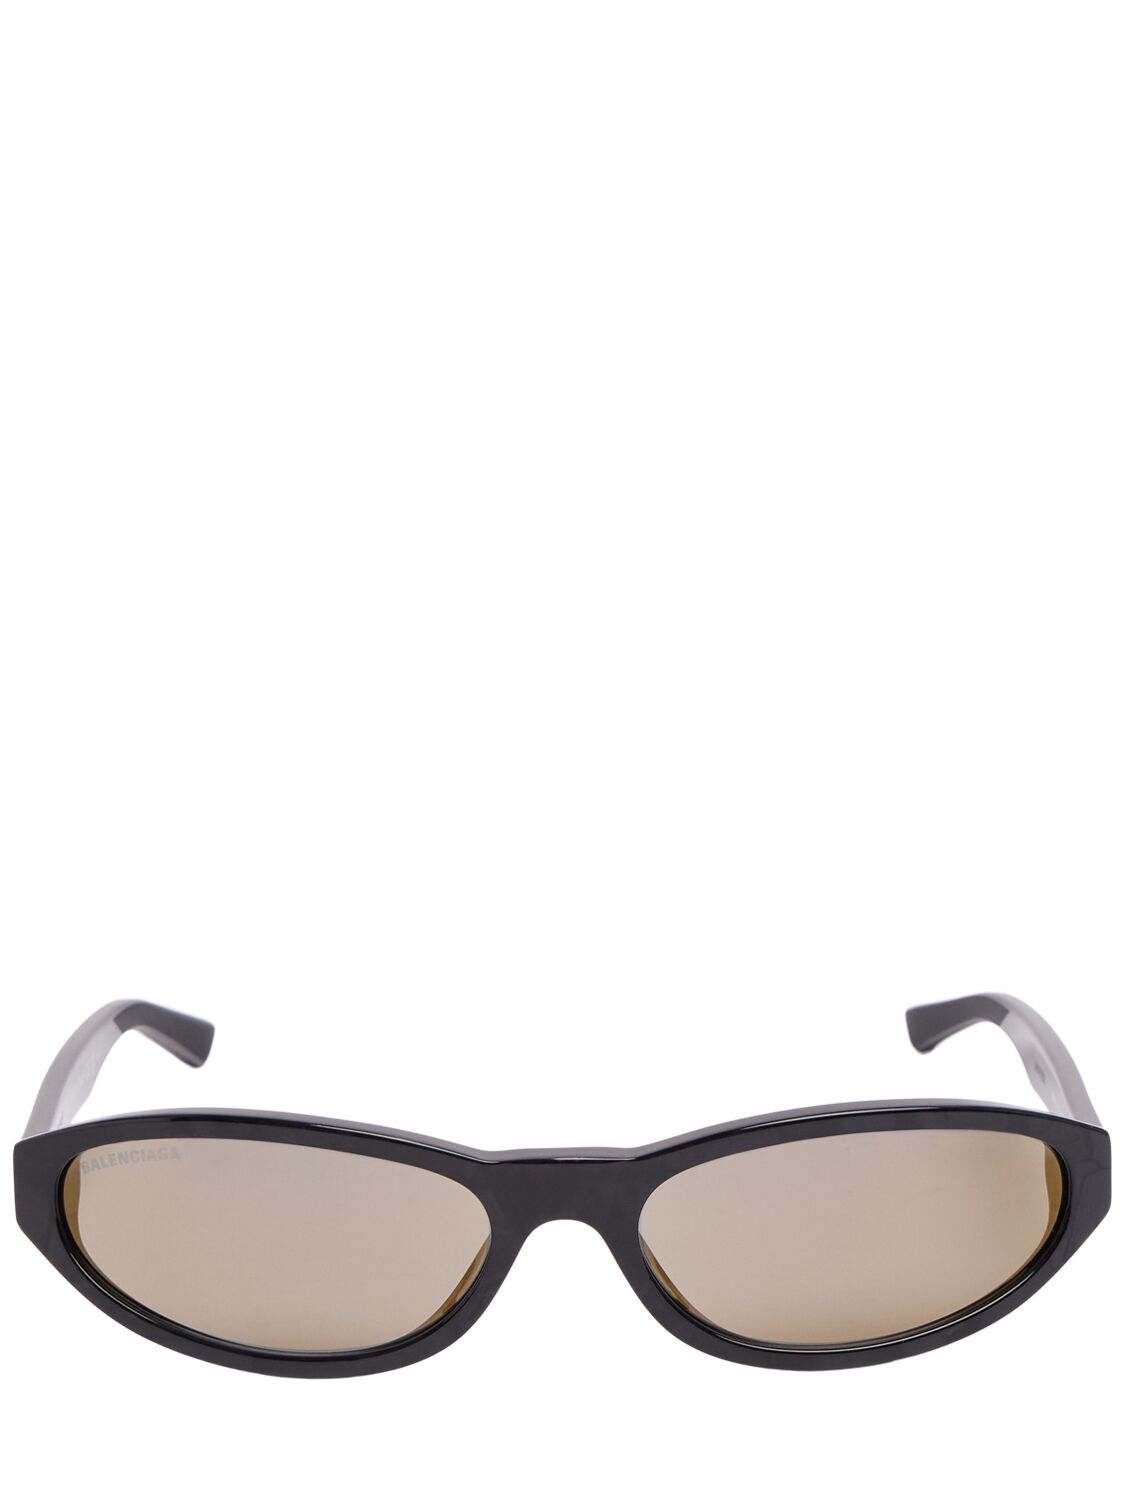 Balenciaga Bb0007s Neo Acetate Sunglasses In Black